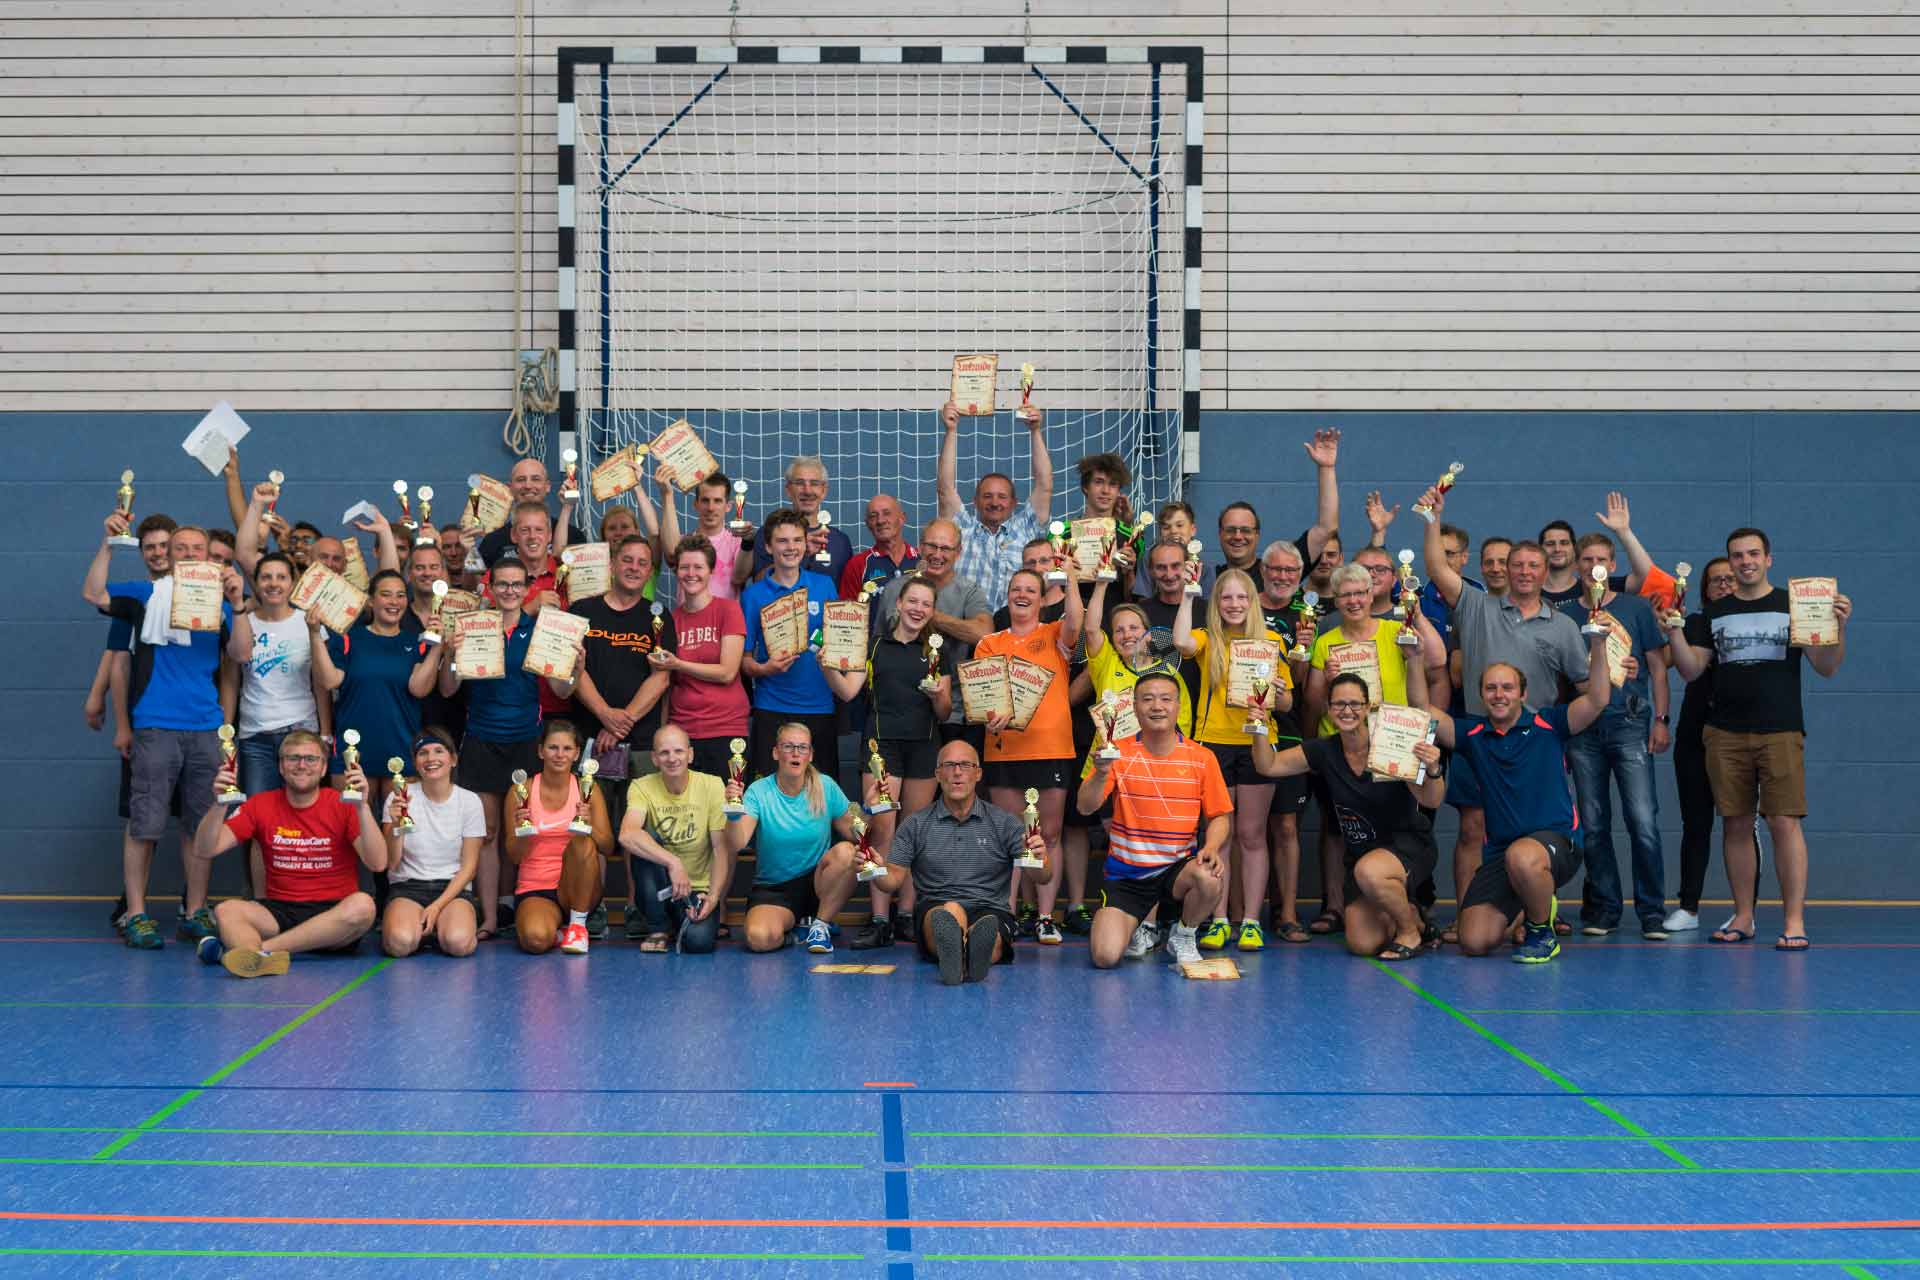 Gruppenfoto des Flechtinger Schlosspokalturniers 2019 ausgerichtet vom Flechtinger SV in der Sporthalle Süplingen - Flechtinger Schlosspokalturnier 2019 - Badminton Flechtingen